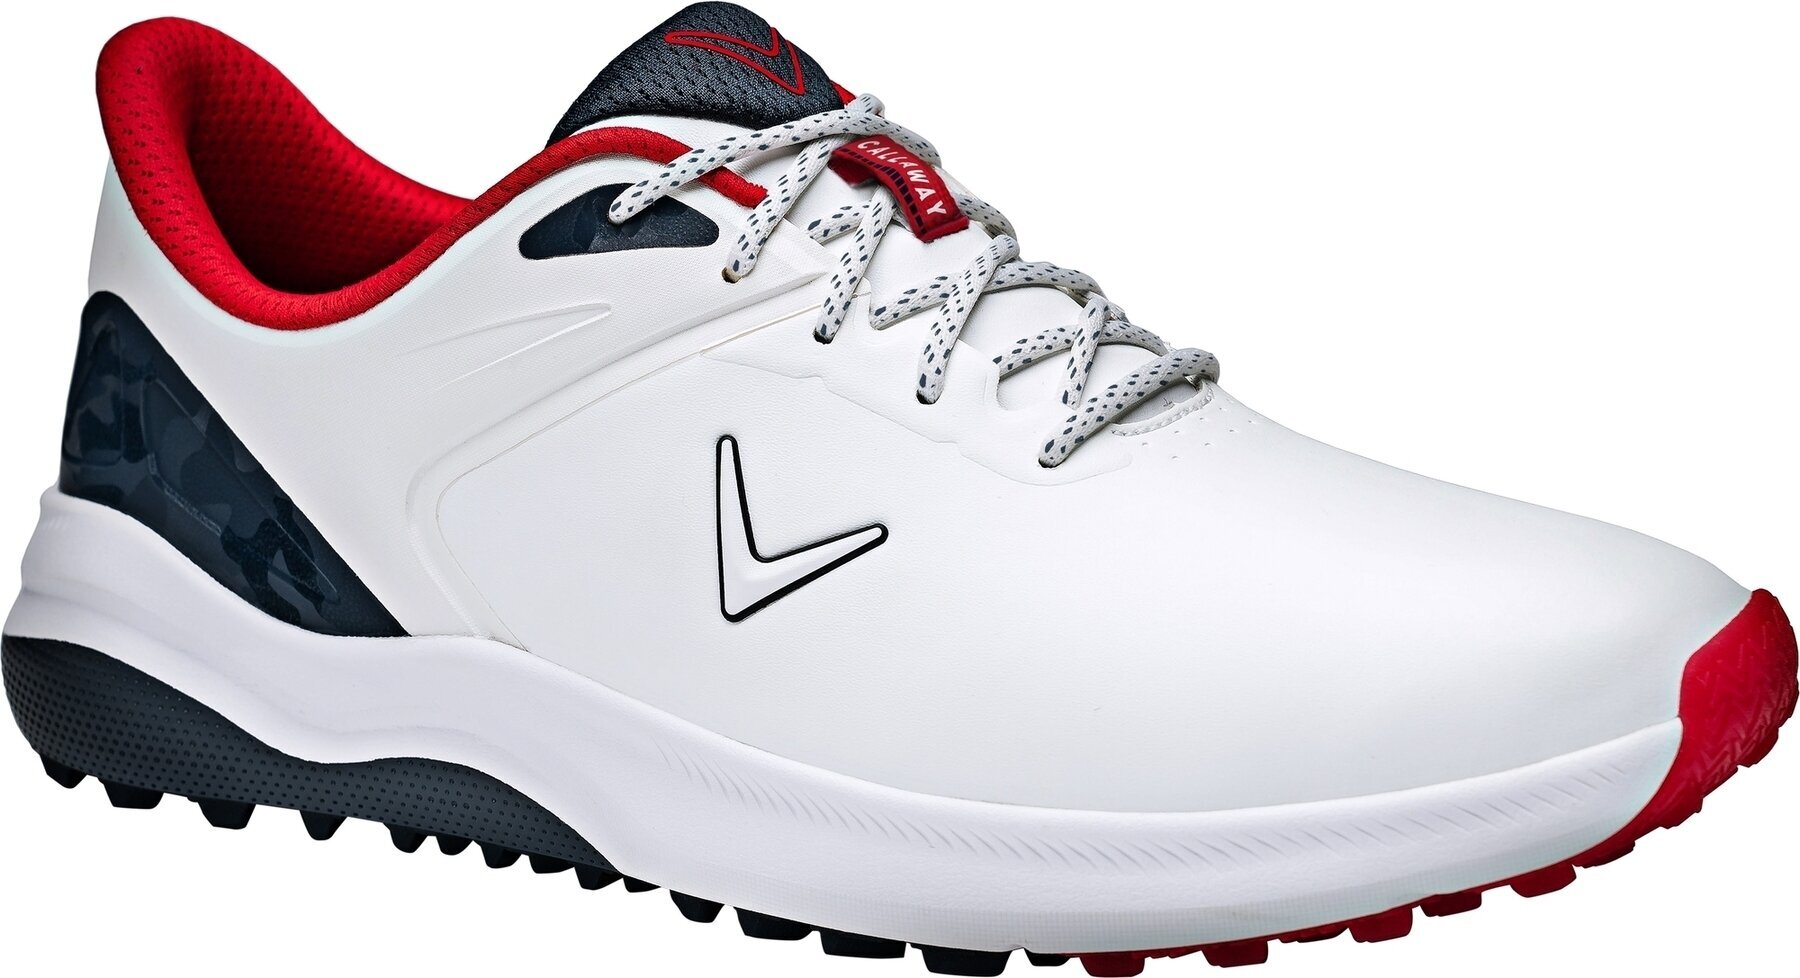 Herren Golfschuhe Callaway Lazer Golf White/Navy/Red 43 Herren Golfschuhe